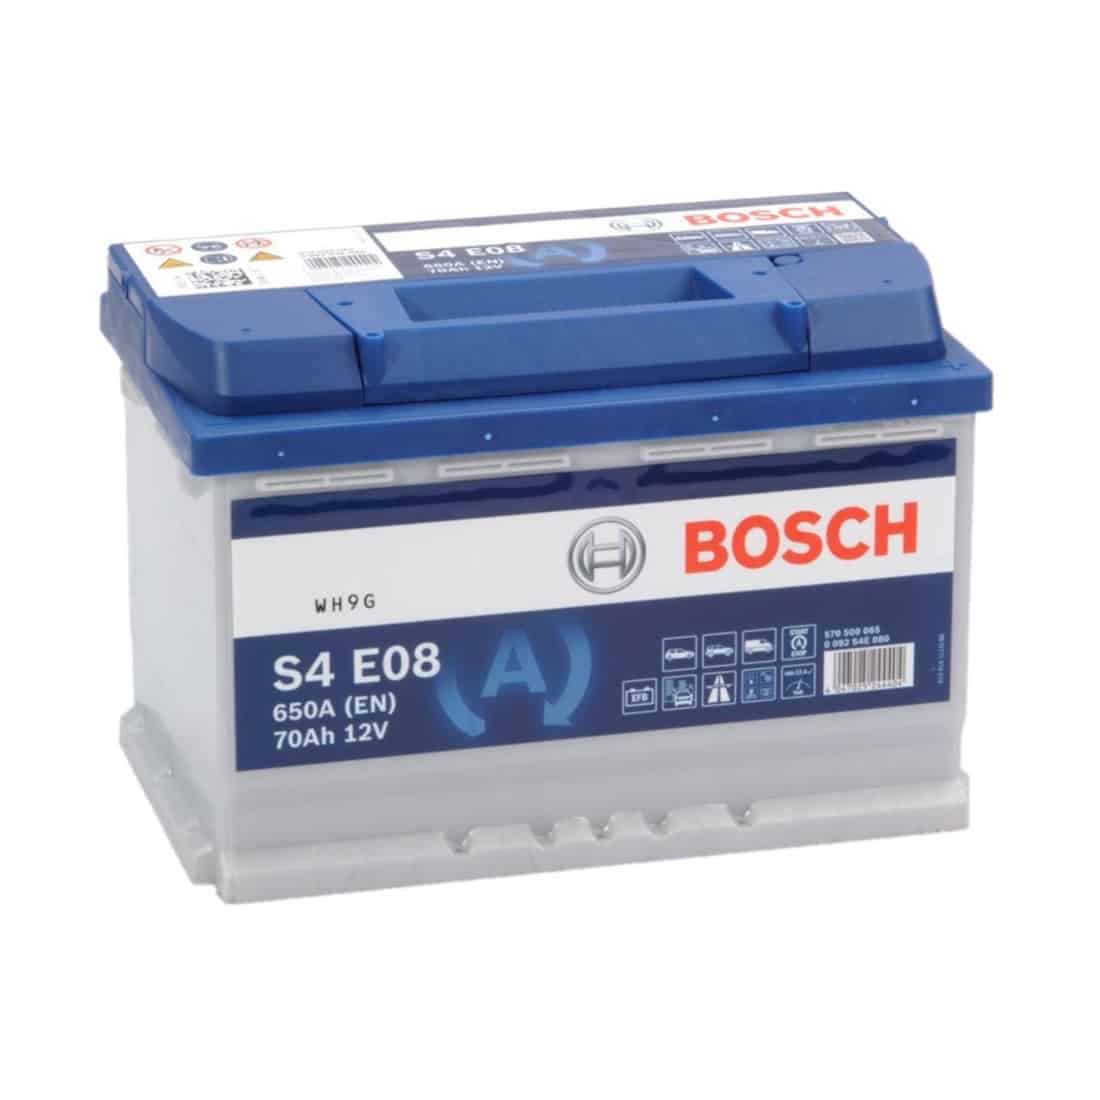 tweede code tandarts Bosch S4E08 - 70Ah accu, 760A, 12V (0 092 S4E 081) - Accudeal